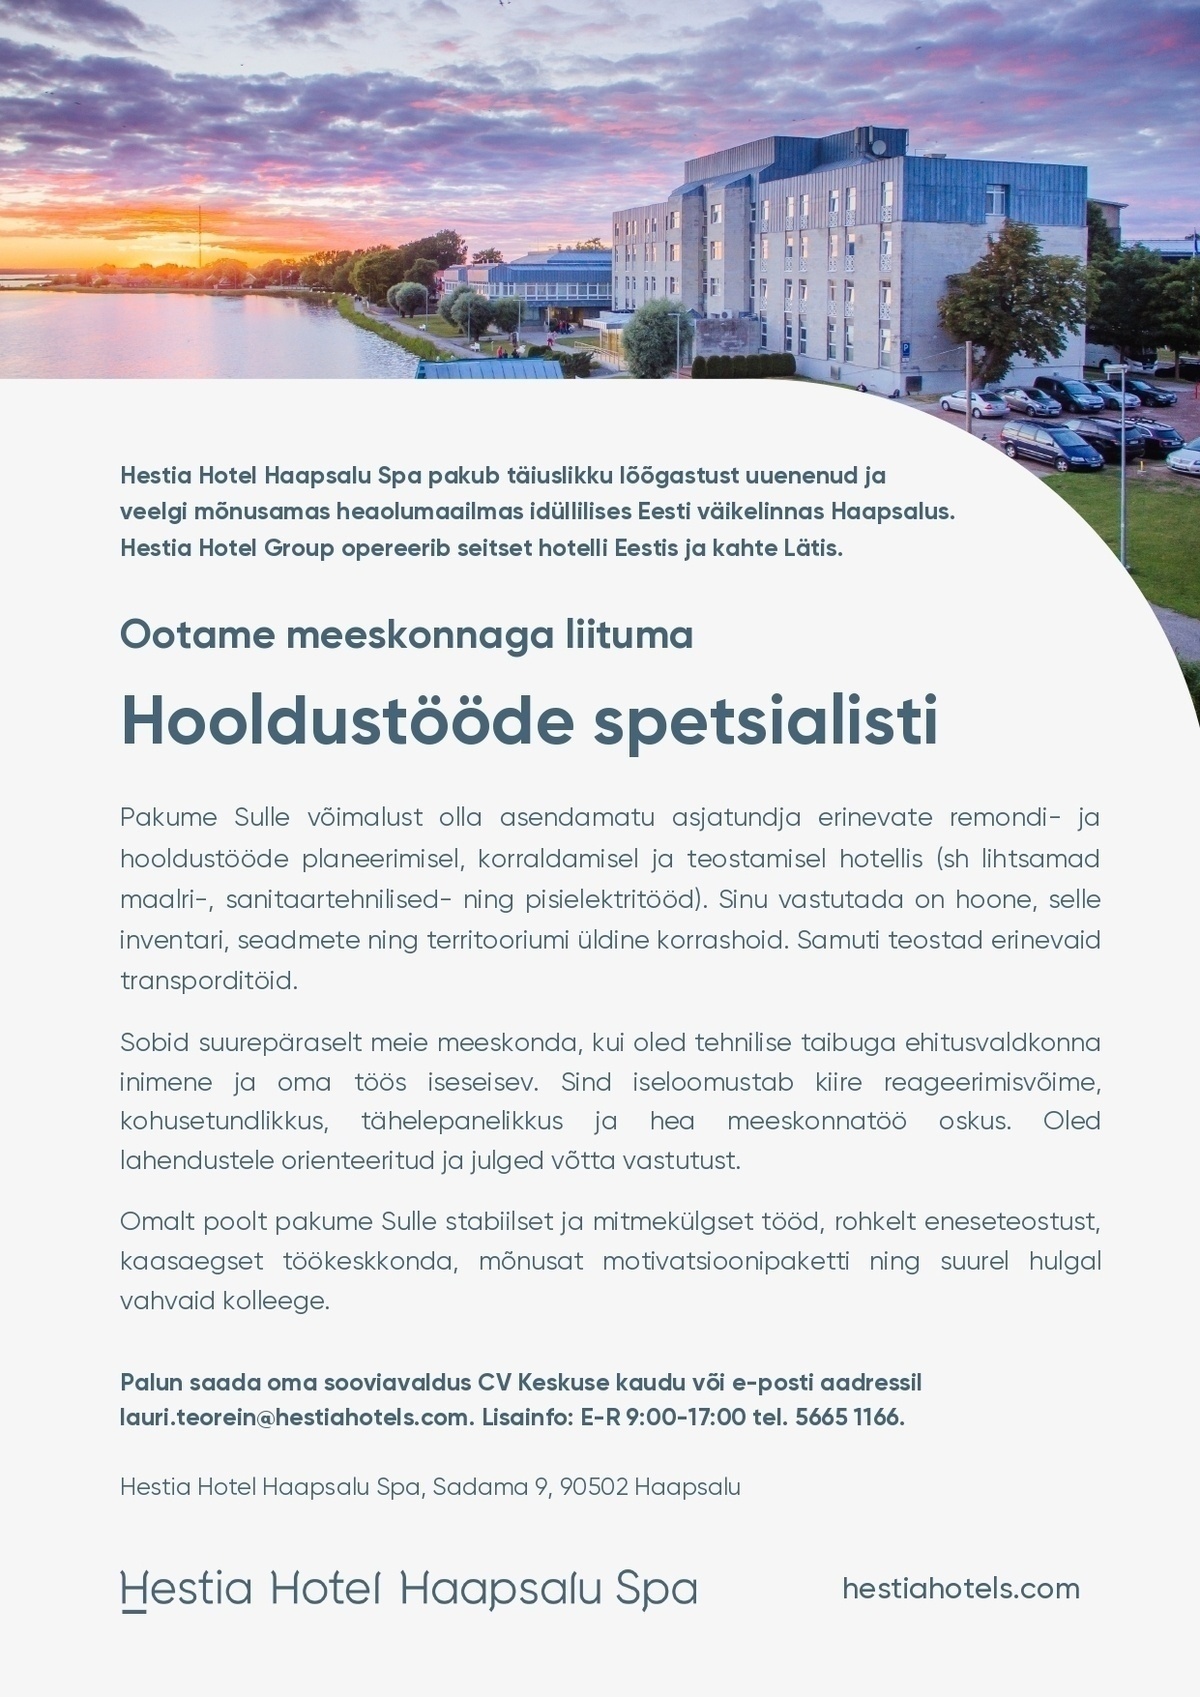 Hestia Hotel Haapsalu Spa Hooldustööde spetsialist (Hestia Hotel Haapsalu Spa)